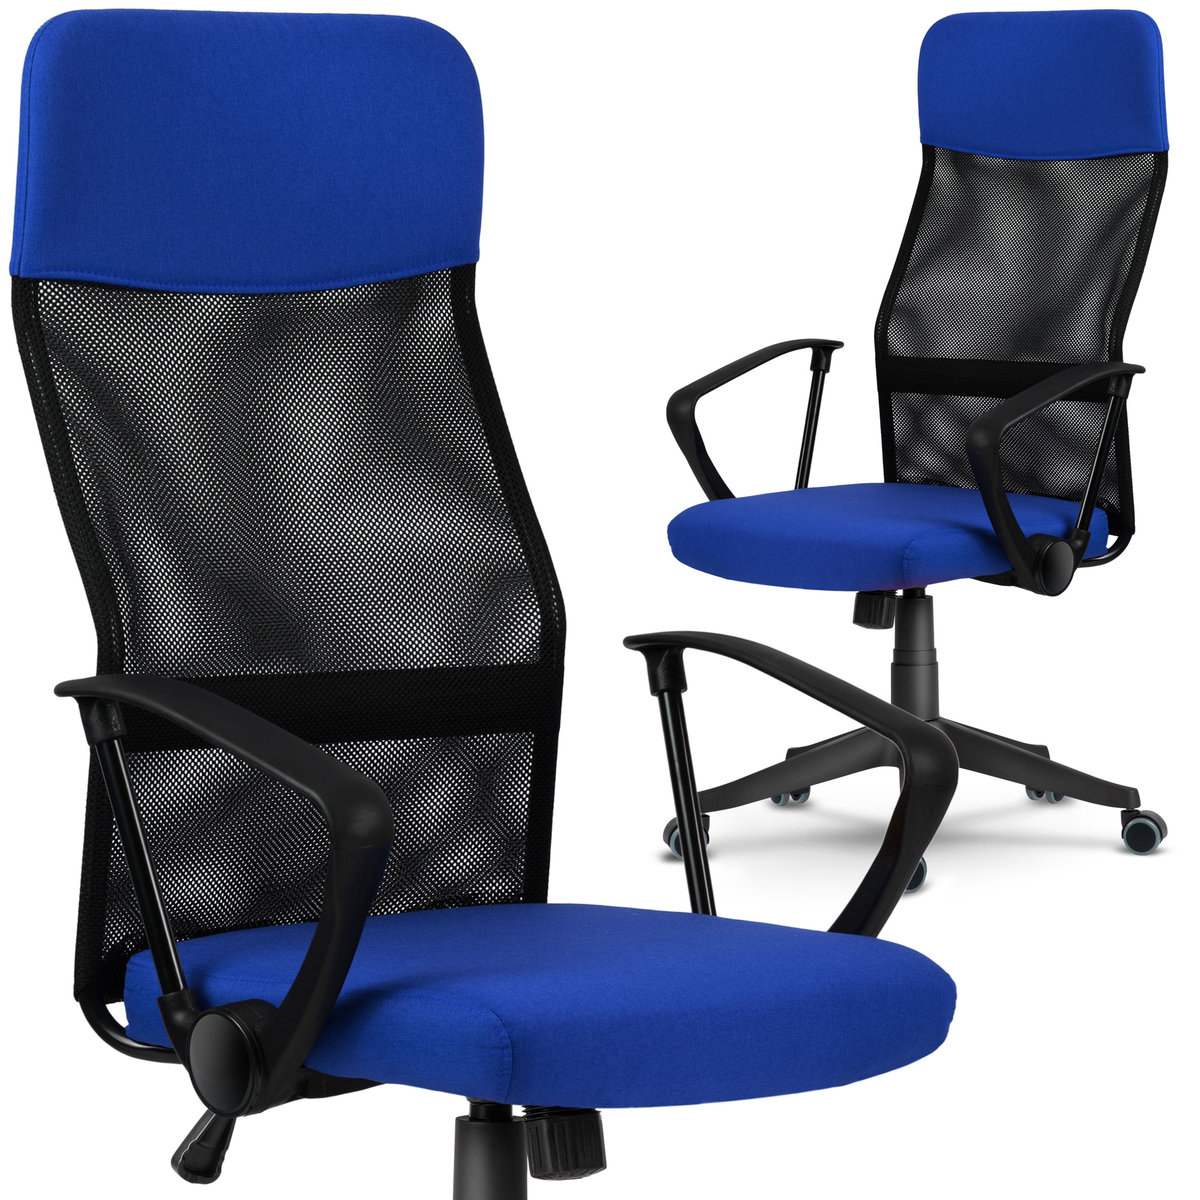 Sofotel Fotel biurowy z mikrosiatki Sofotel Sydney niebiesko-czarny 2454